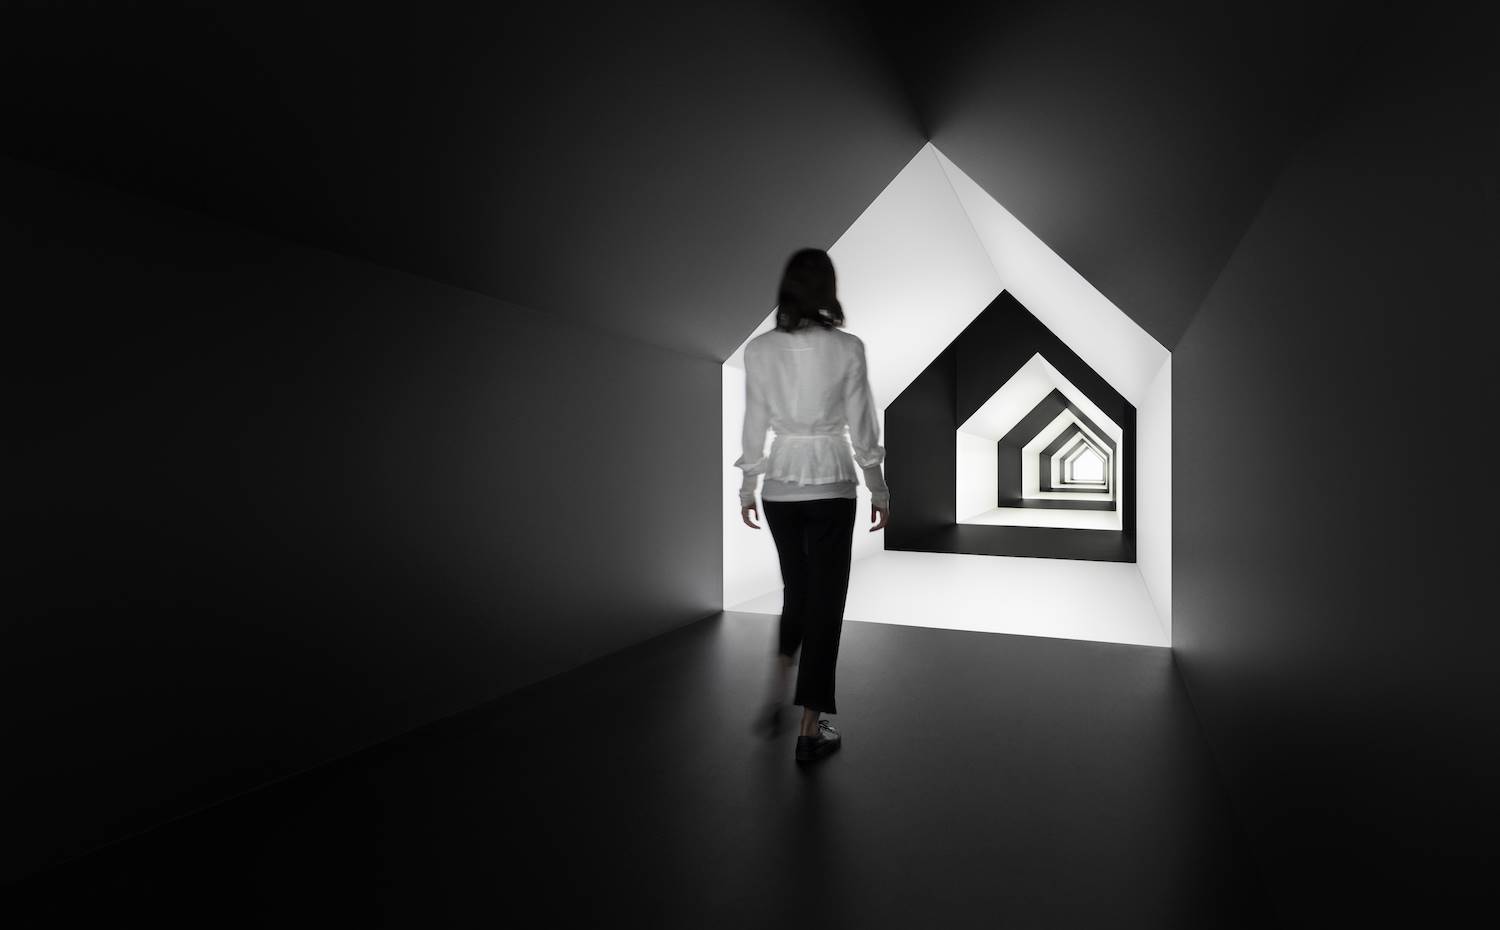 Un pasillo en forma de casa juega con la sensación espacial gracias a la combinación de blanco y negro